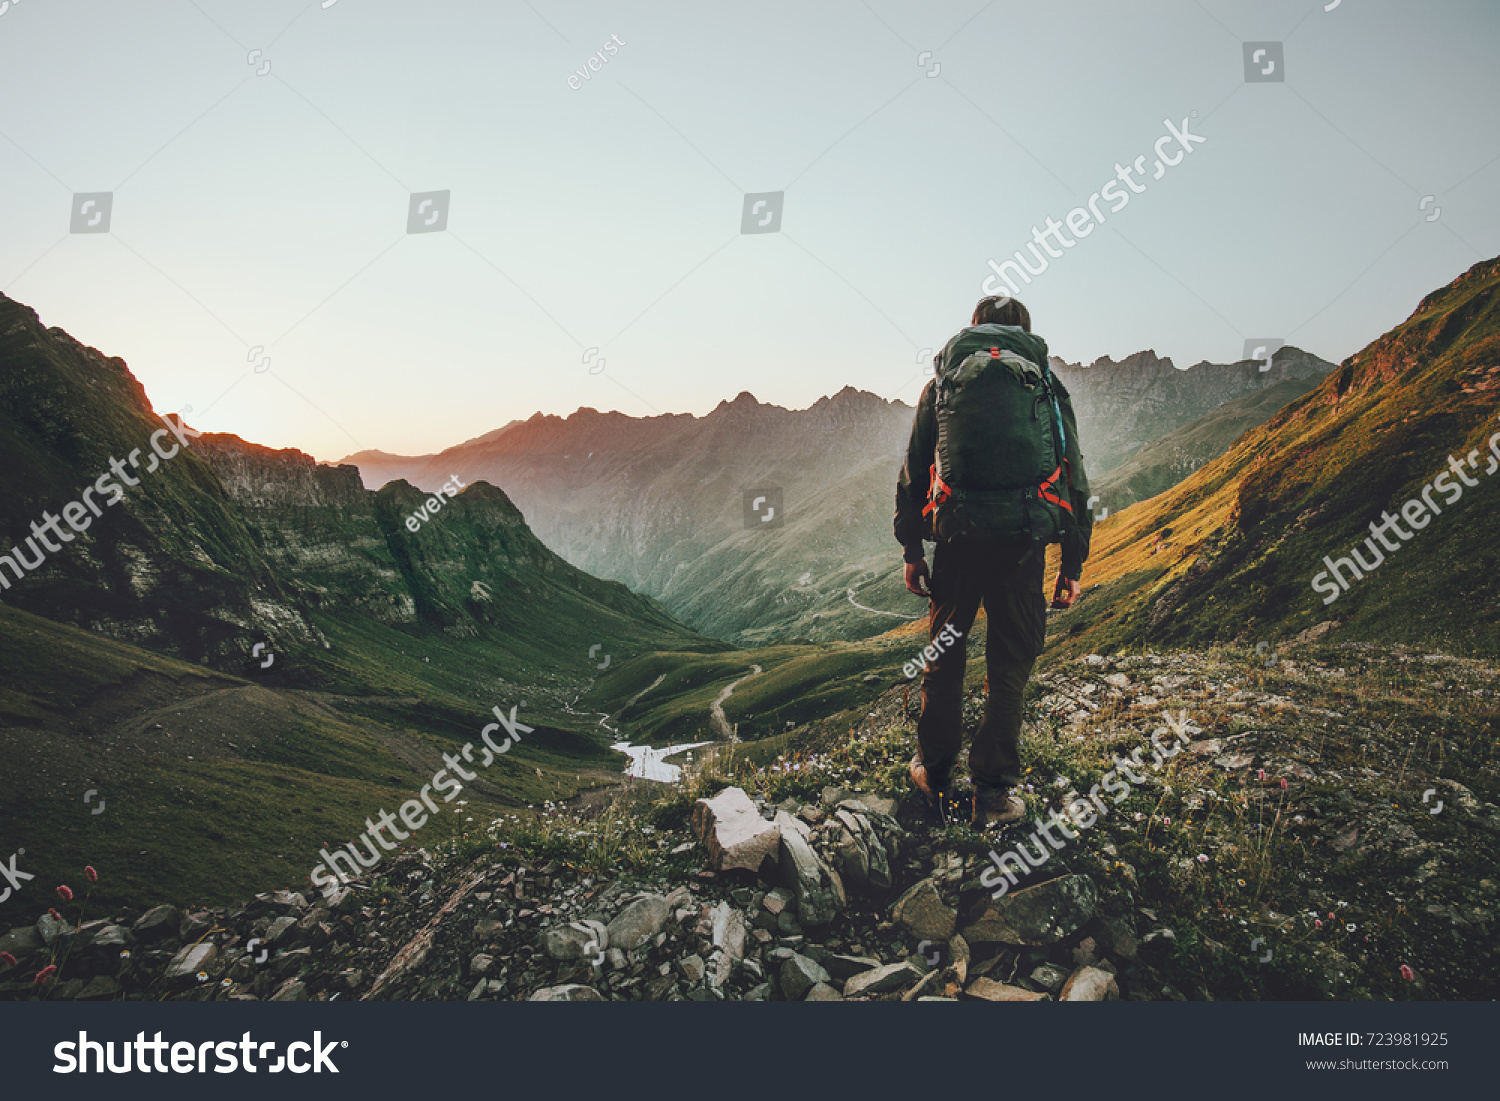 Mann Wandern bei Sonnenuntergang Berge mit schweren Rucksack Reise Lifestyle Wanderlust Abenteuerkonzept Sommerurlaub im Freien allein in die Wildnis #723981925